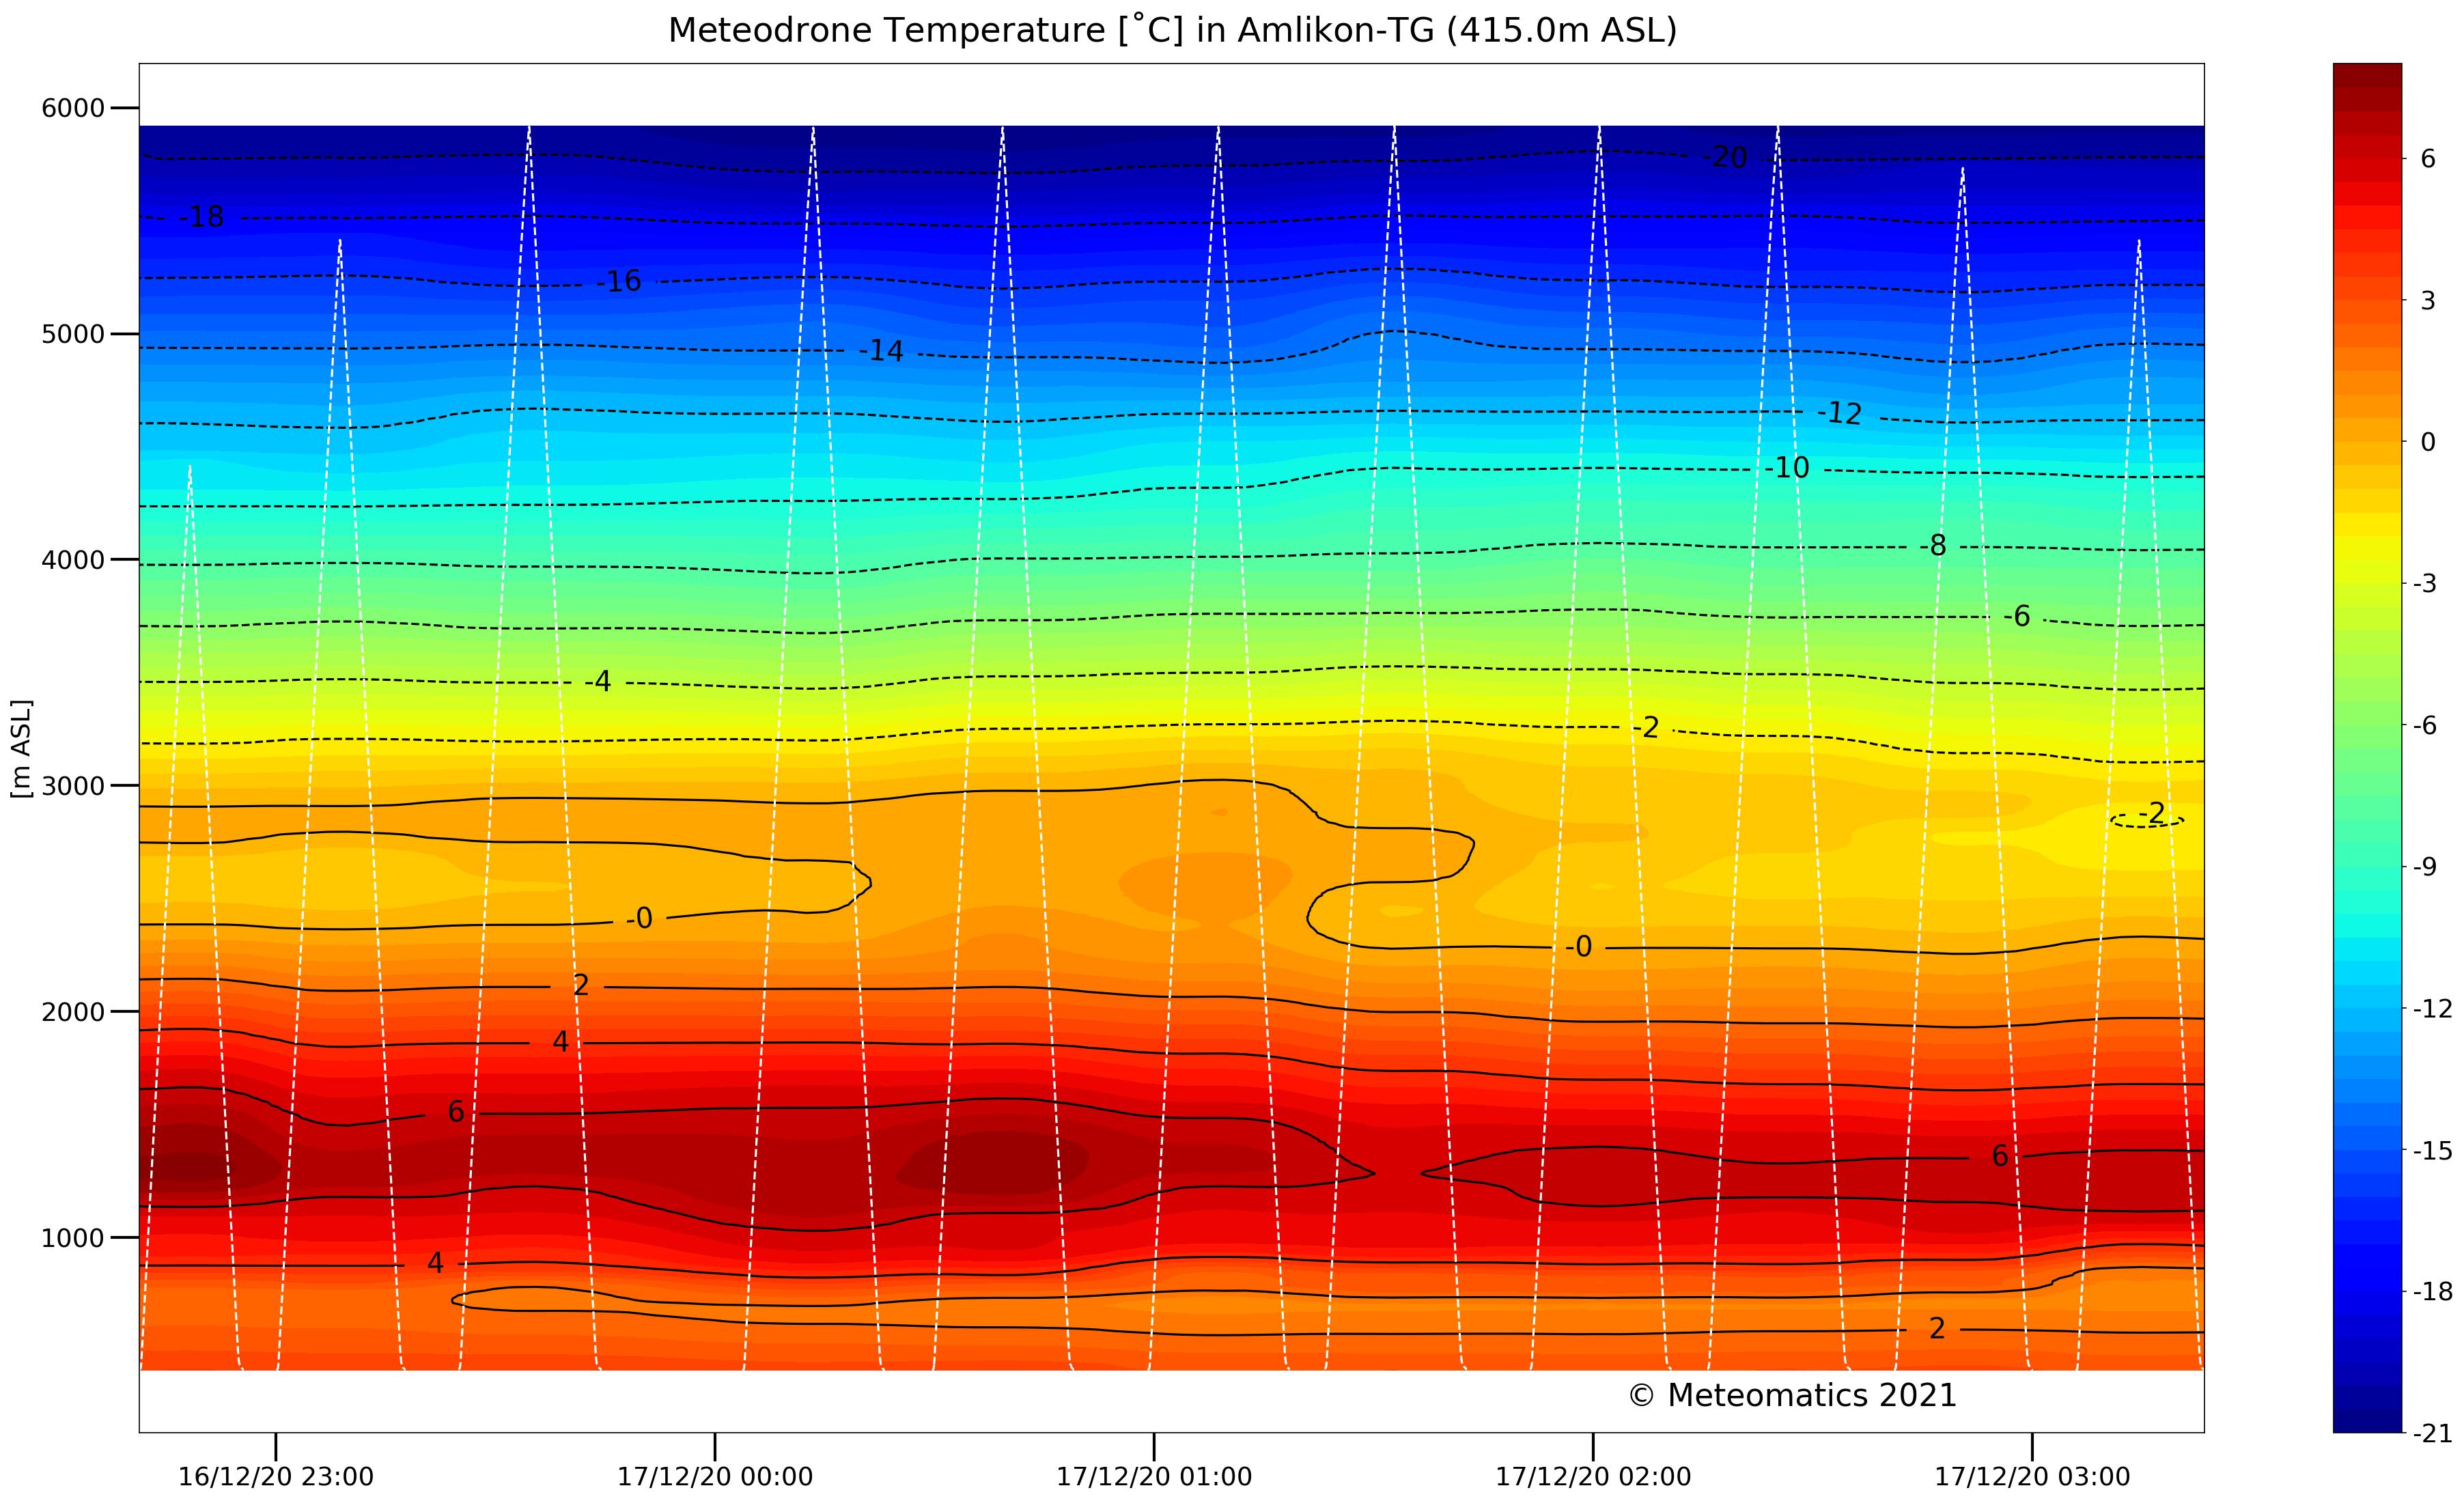 Research studies meteodrone temperature